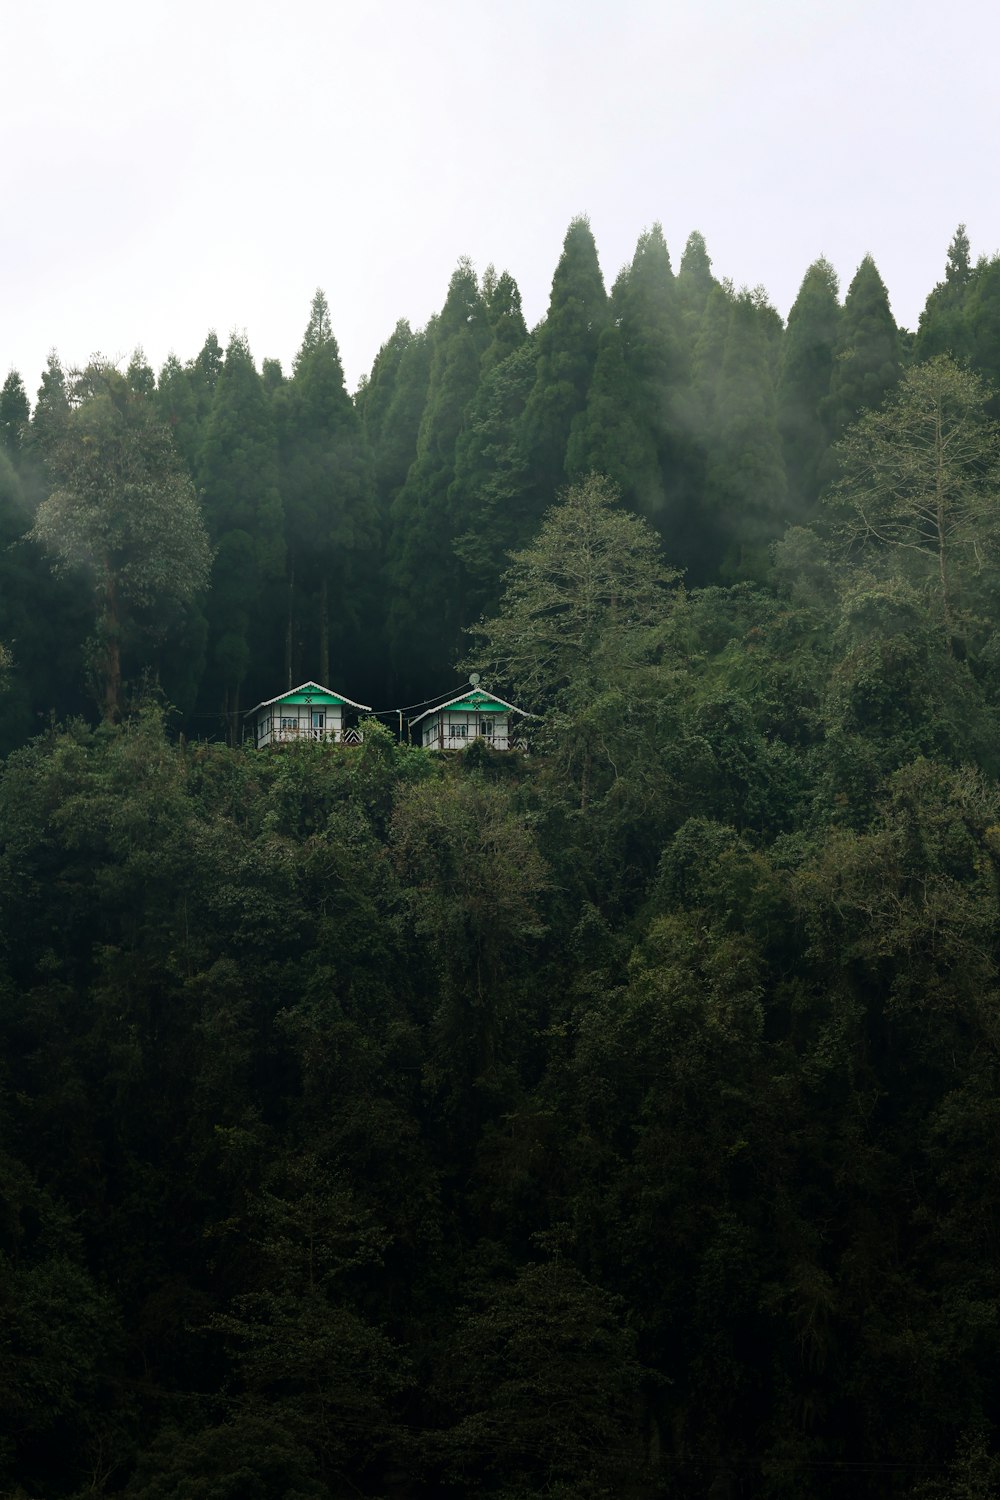 Un grupo de casas sentadas en la cima de una exuberante ladera verde